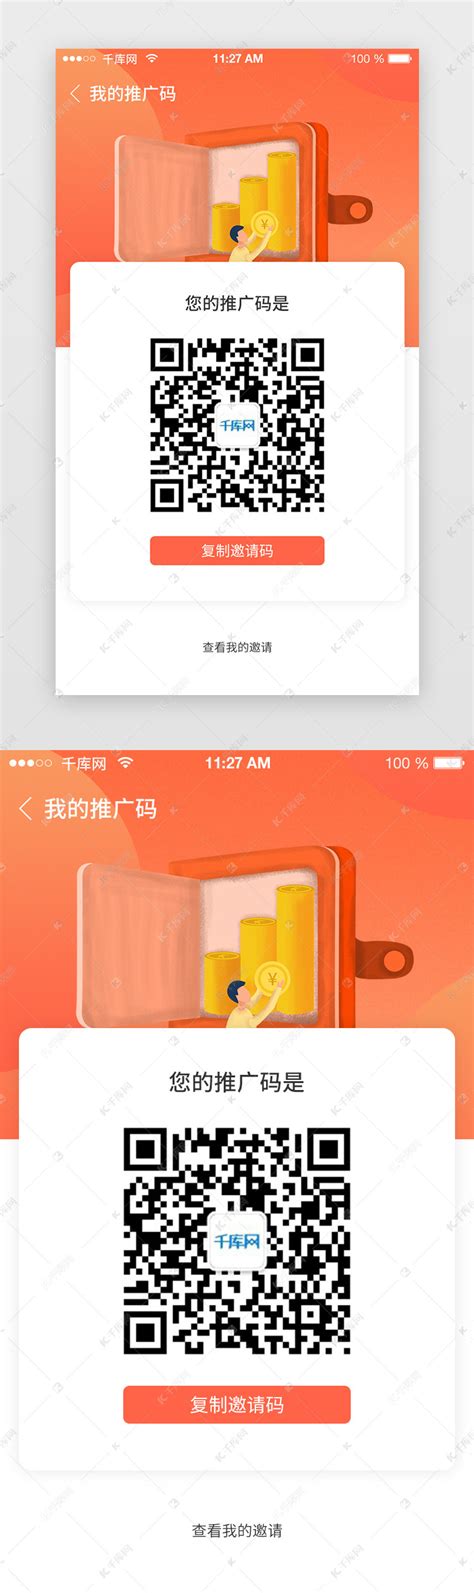 app二维码邀请好友注册活动推广ui界面设计素材-千库网